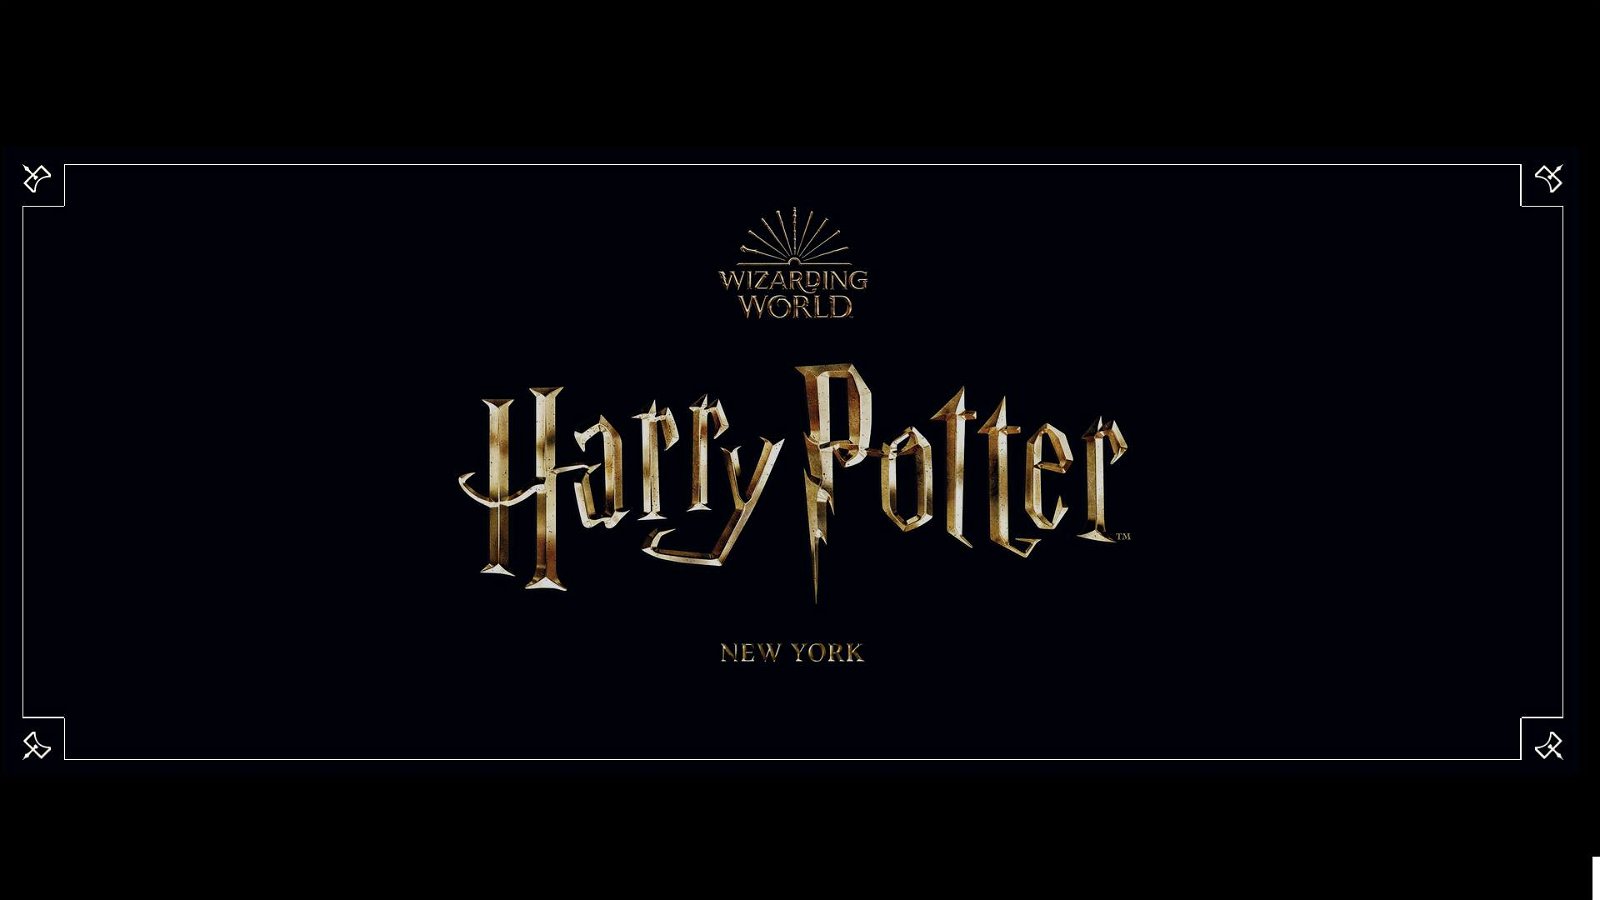 Immagine di Harry Potter New York: apre il negozio online